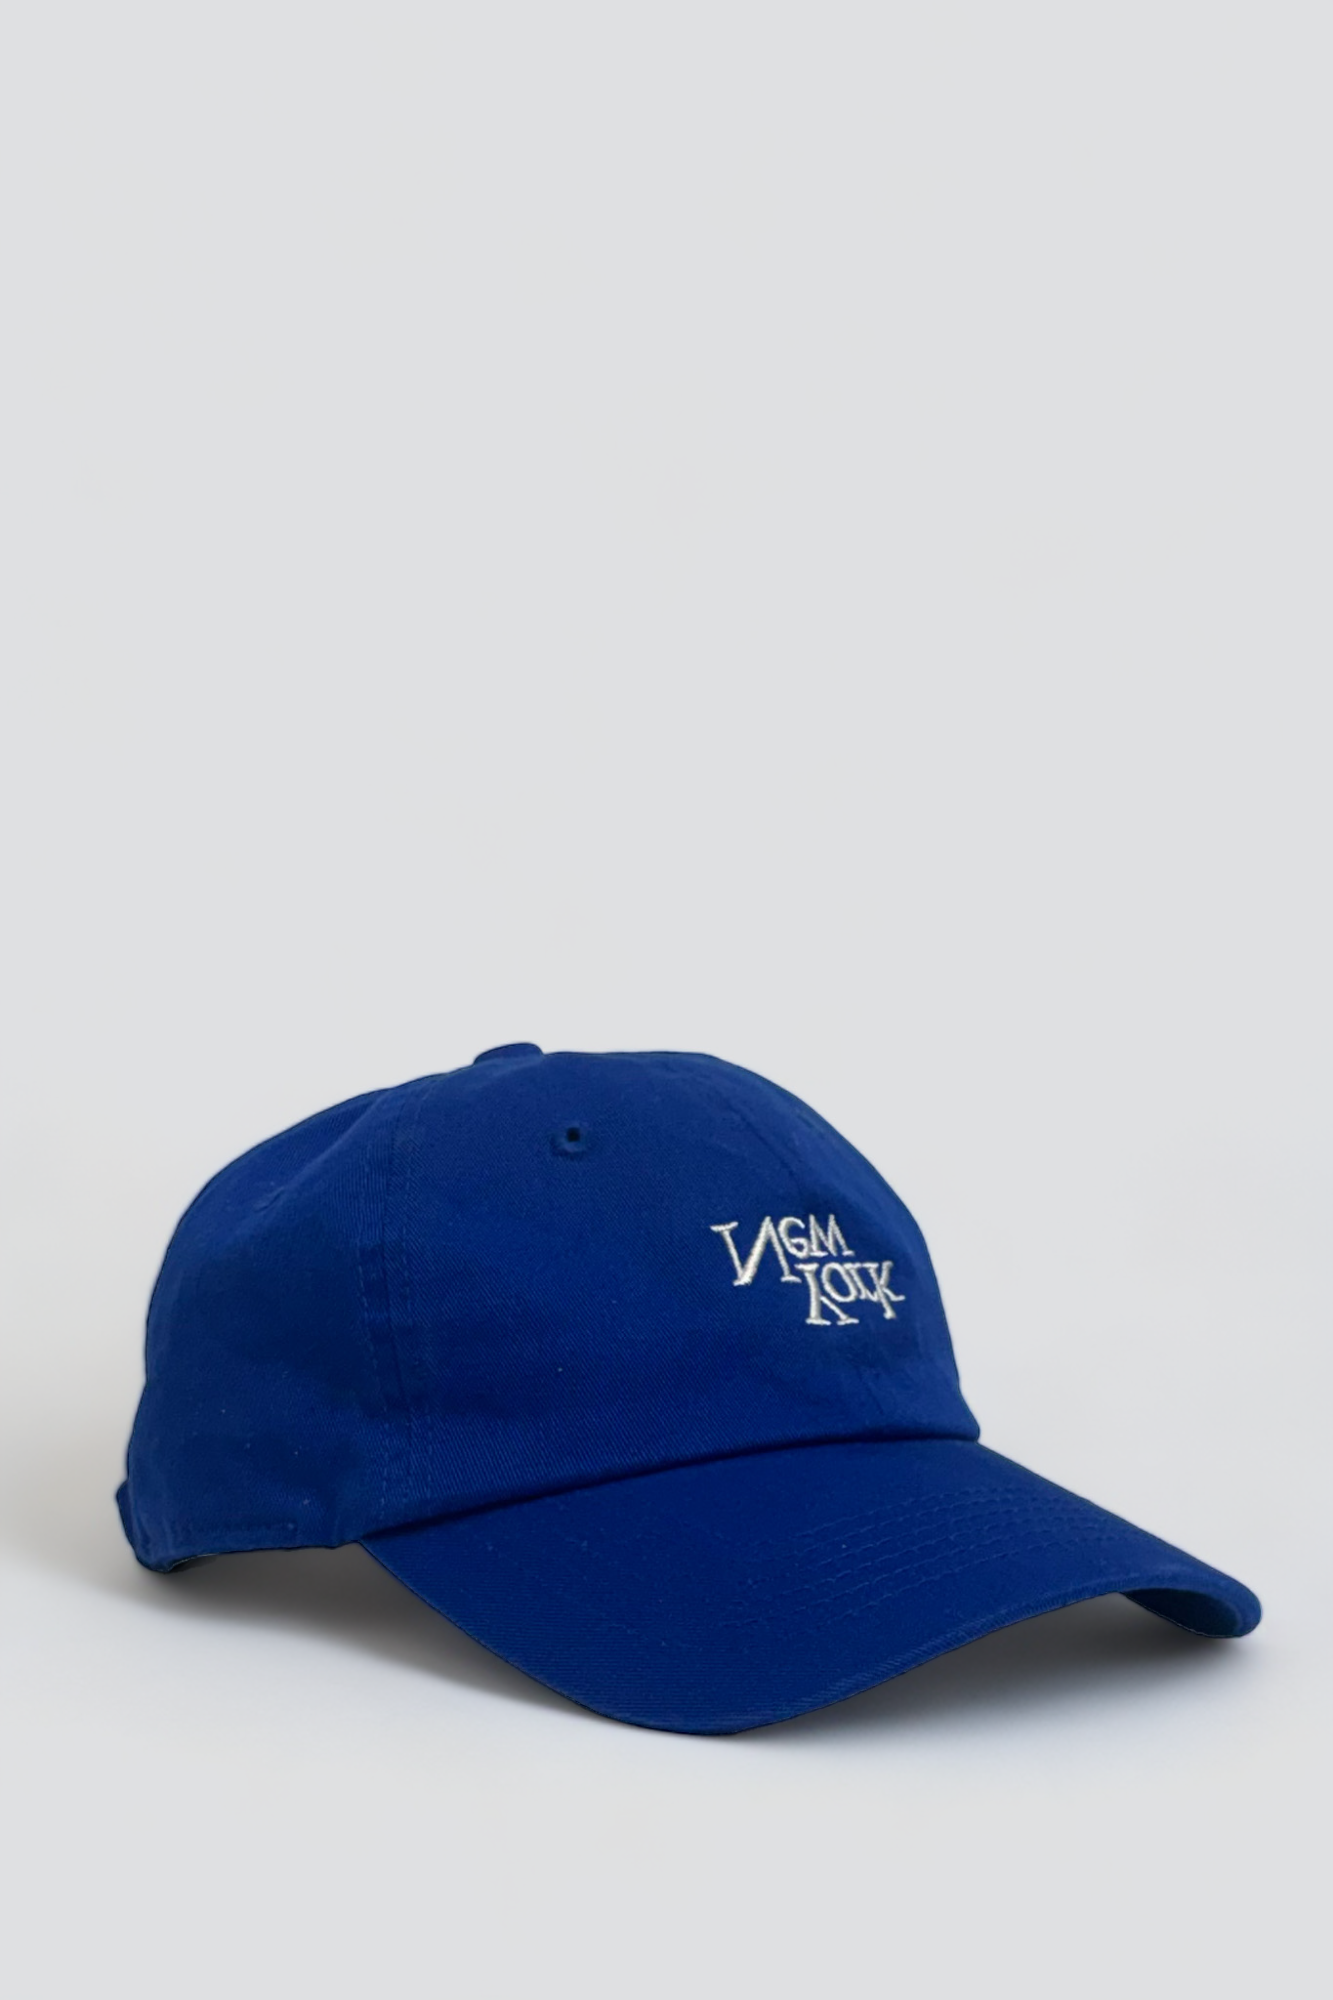 New York V2 Embroidered Hat - Cobalt Blue/White